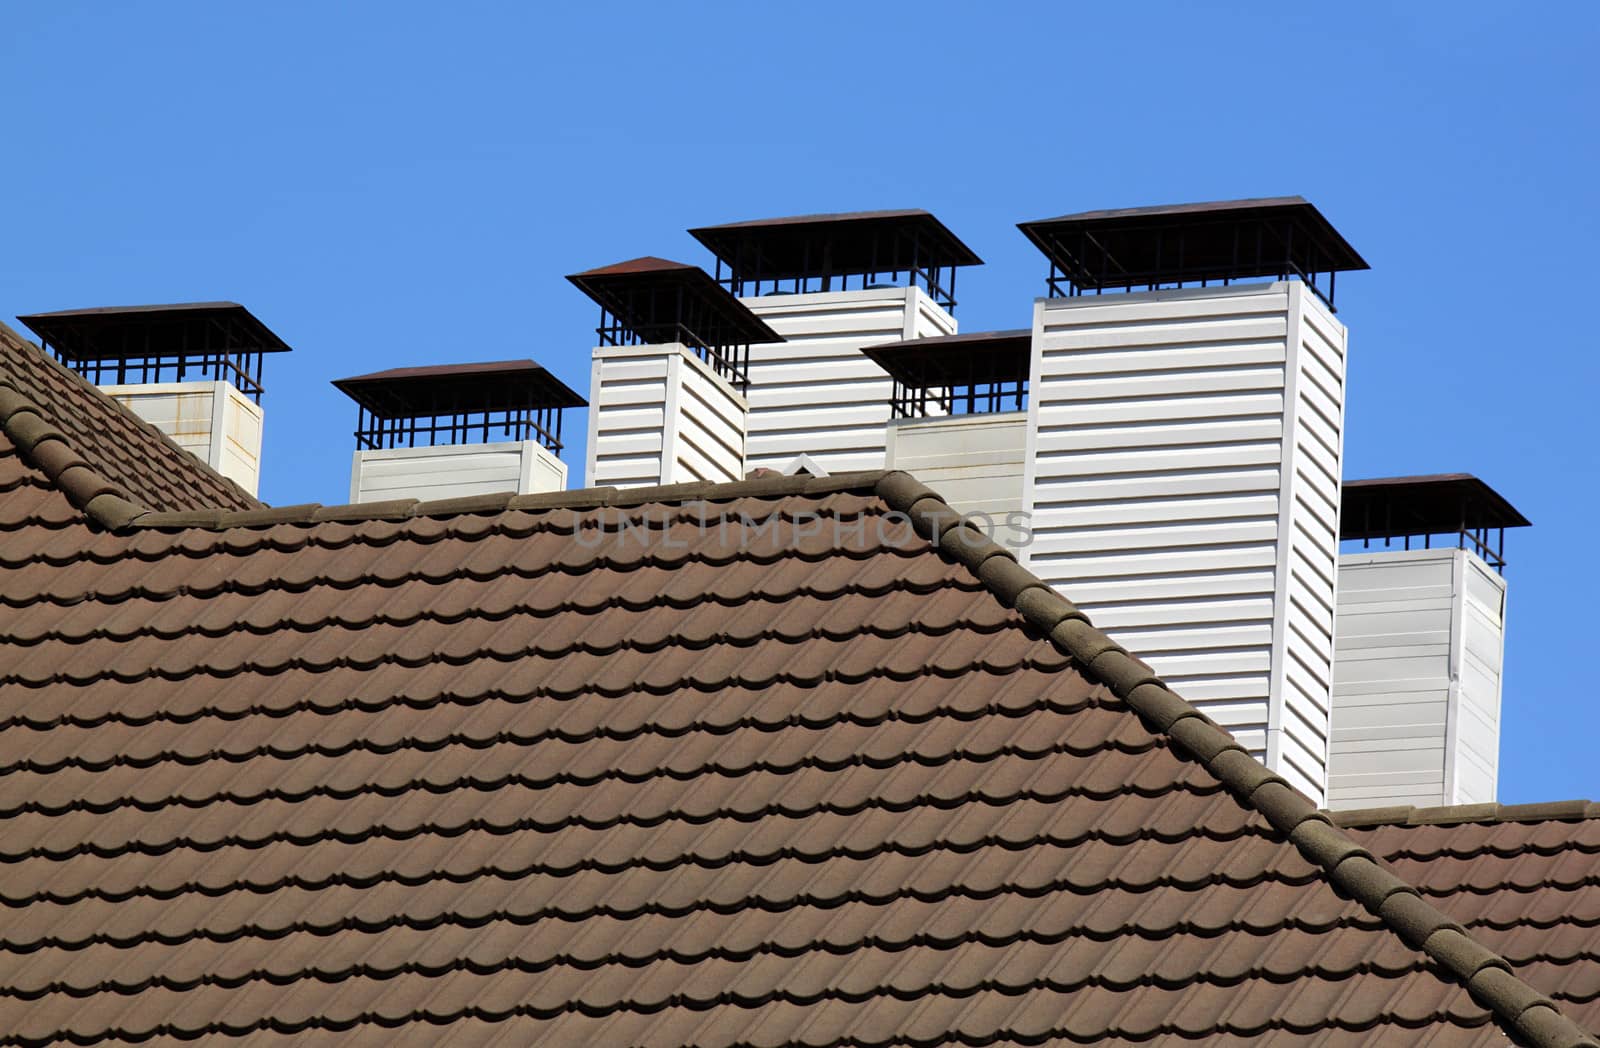 chimneys on tiled roof over blue sky